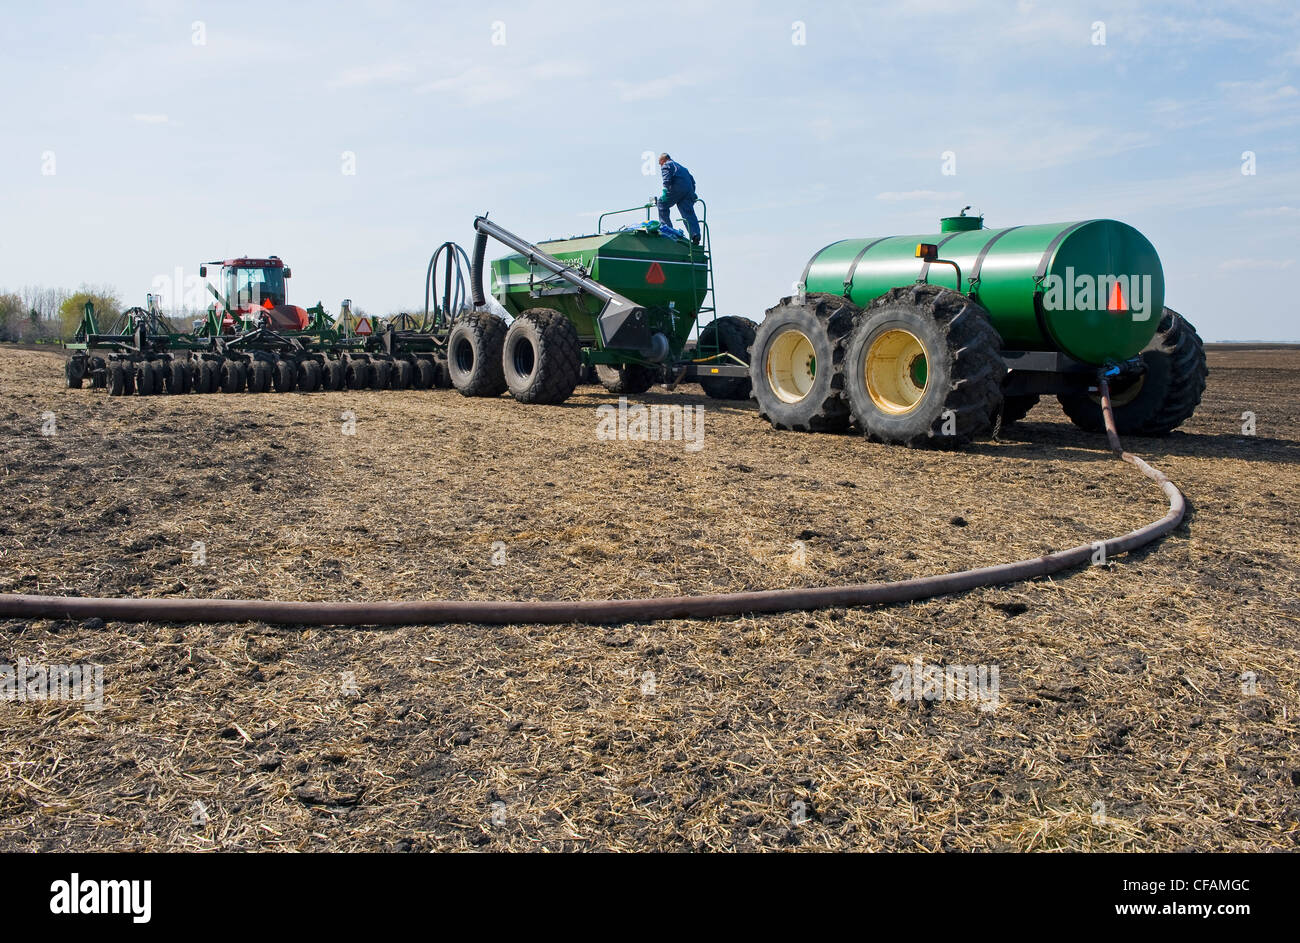 Un agricoltore carica un serbatoio della seminatrice con semi di canola e un altro serbatoio con fertilizzante liquido, nei pressi di Dugald, Manitoba, Canada Foto Stock